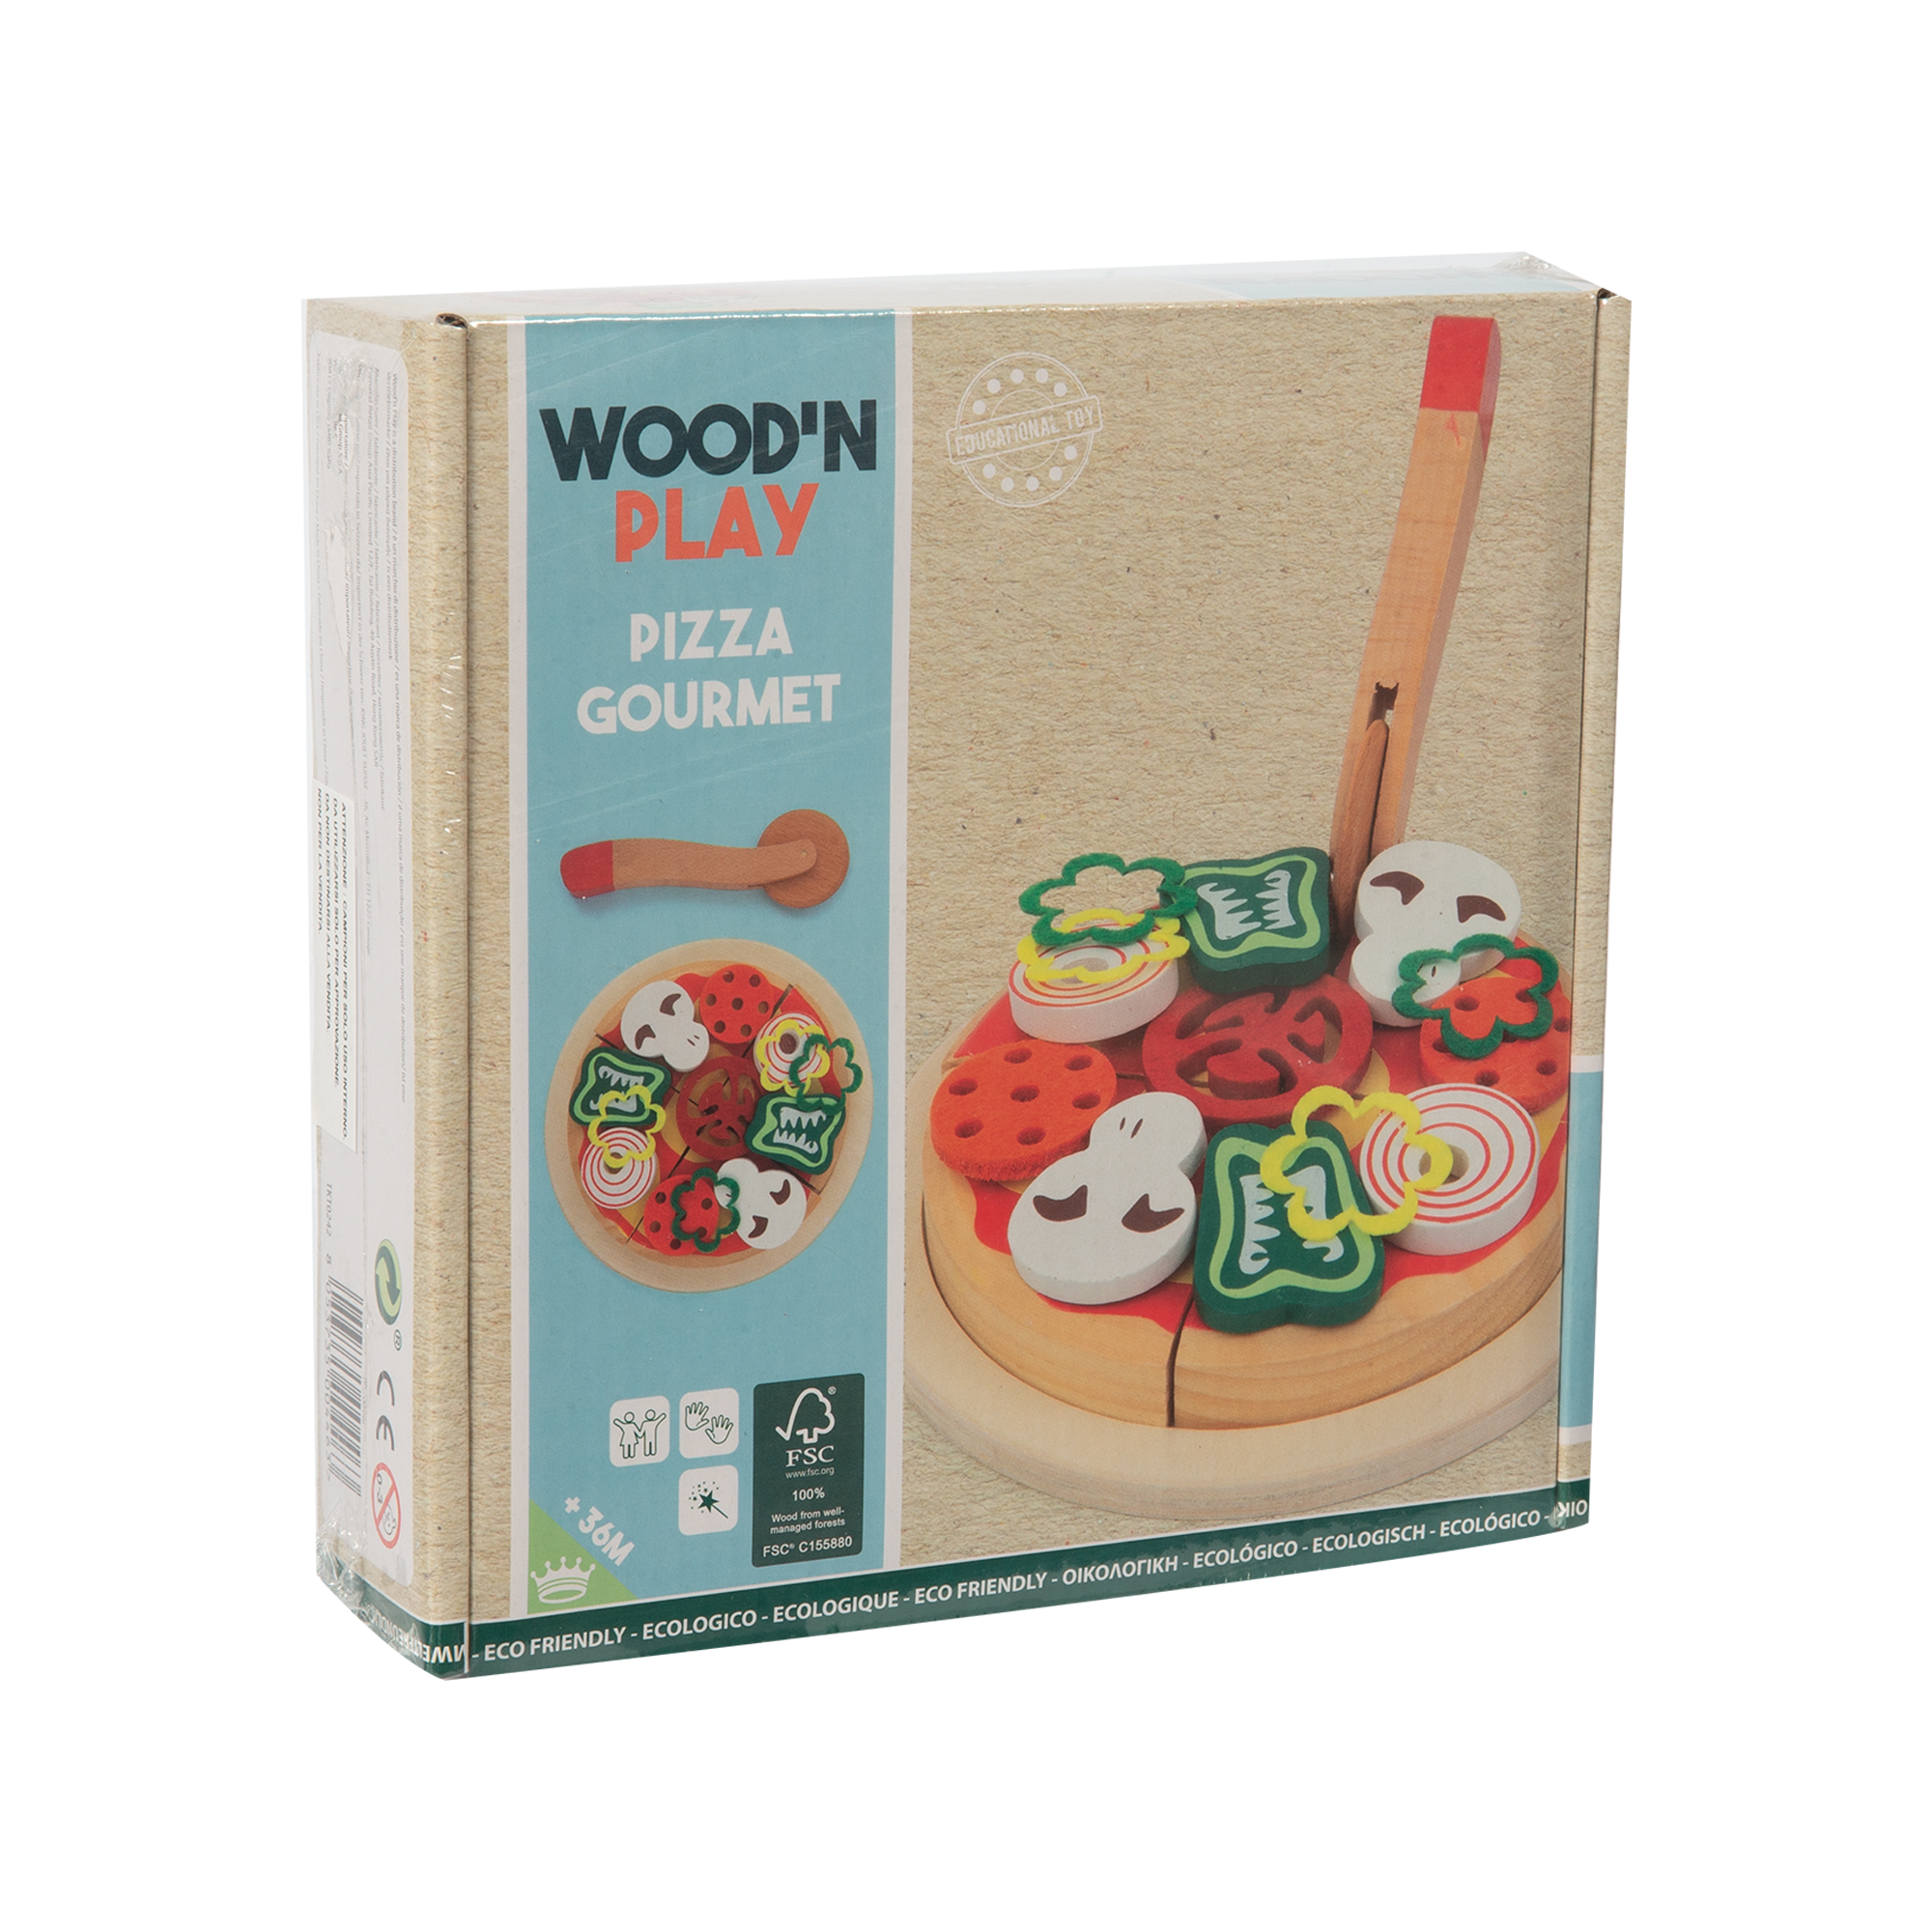 Pizza gourmet - WOOD 'N' PLAY